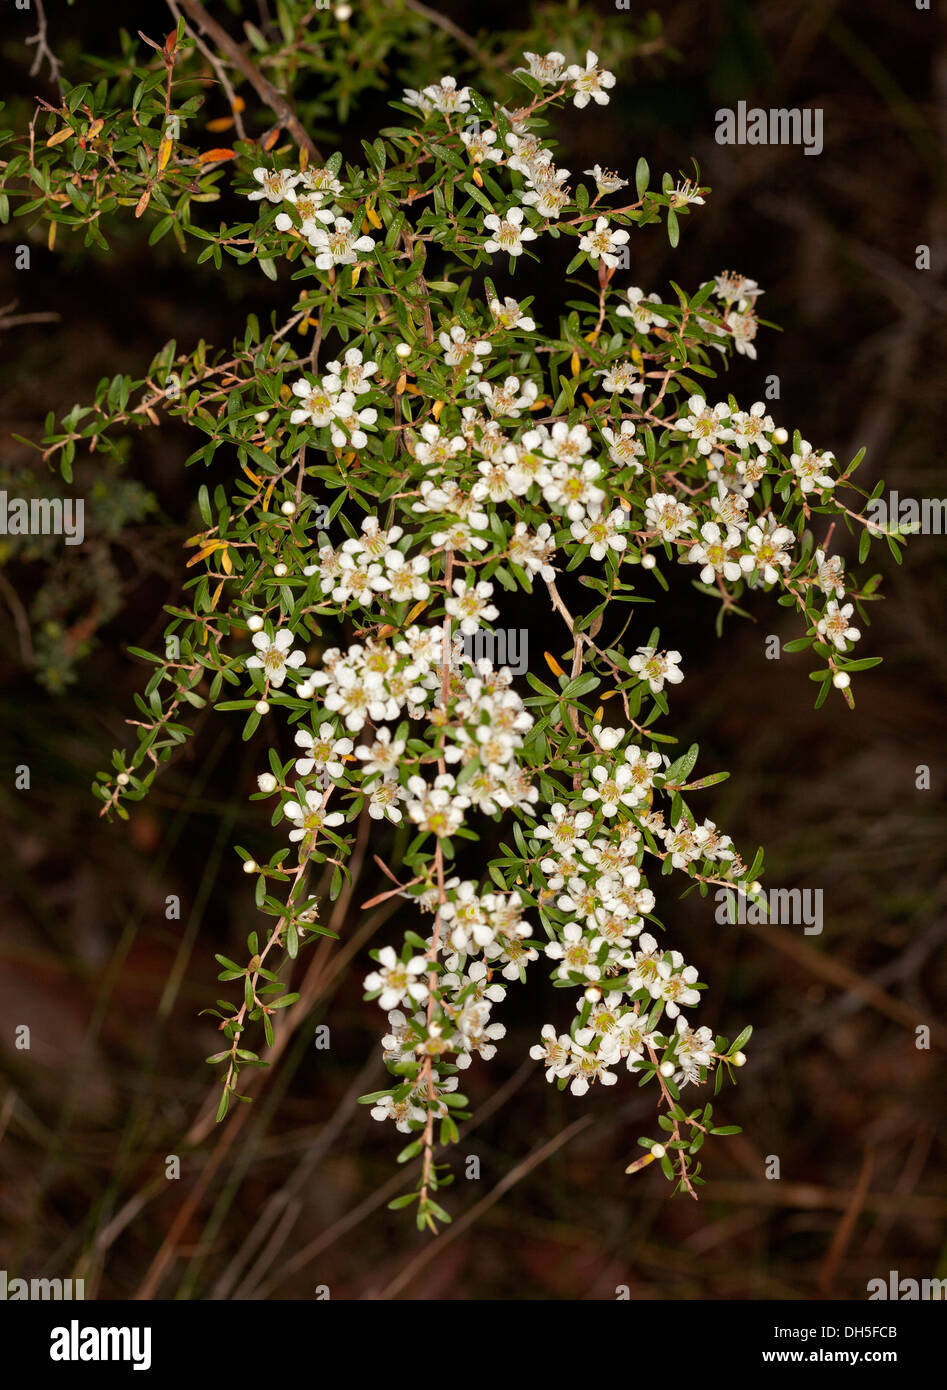 Grappe de fleurs blanches et de feuilles de Leptospermum liversidgei - Olive - fleurs sauvages de l'arbre à thé australien dans une forêt en pleine croissance Banque D'Images